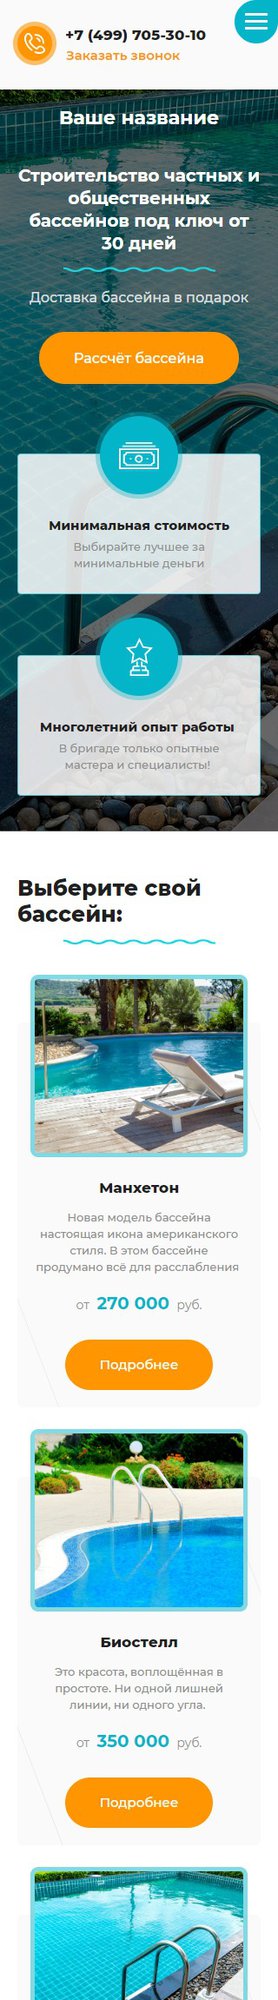 Готовый Сайт-Бизнес № 2248903 - Строительство бассейнов и Аквапарков (Мобильная версия)